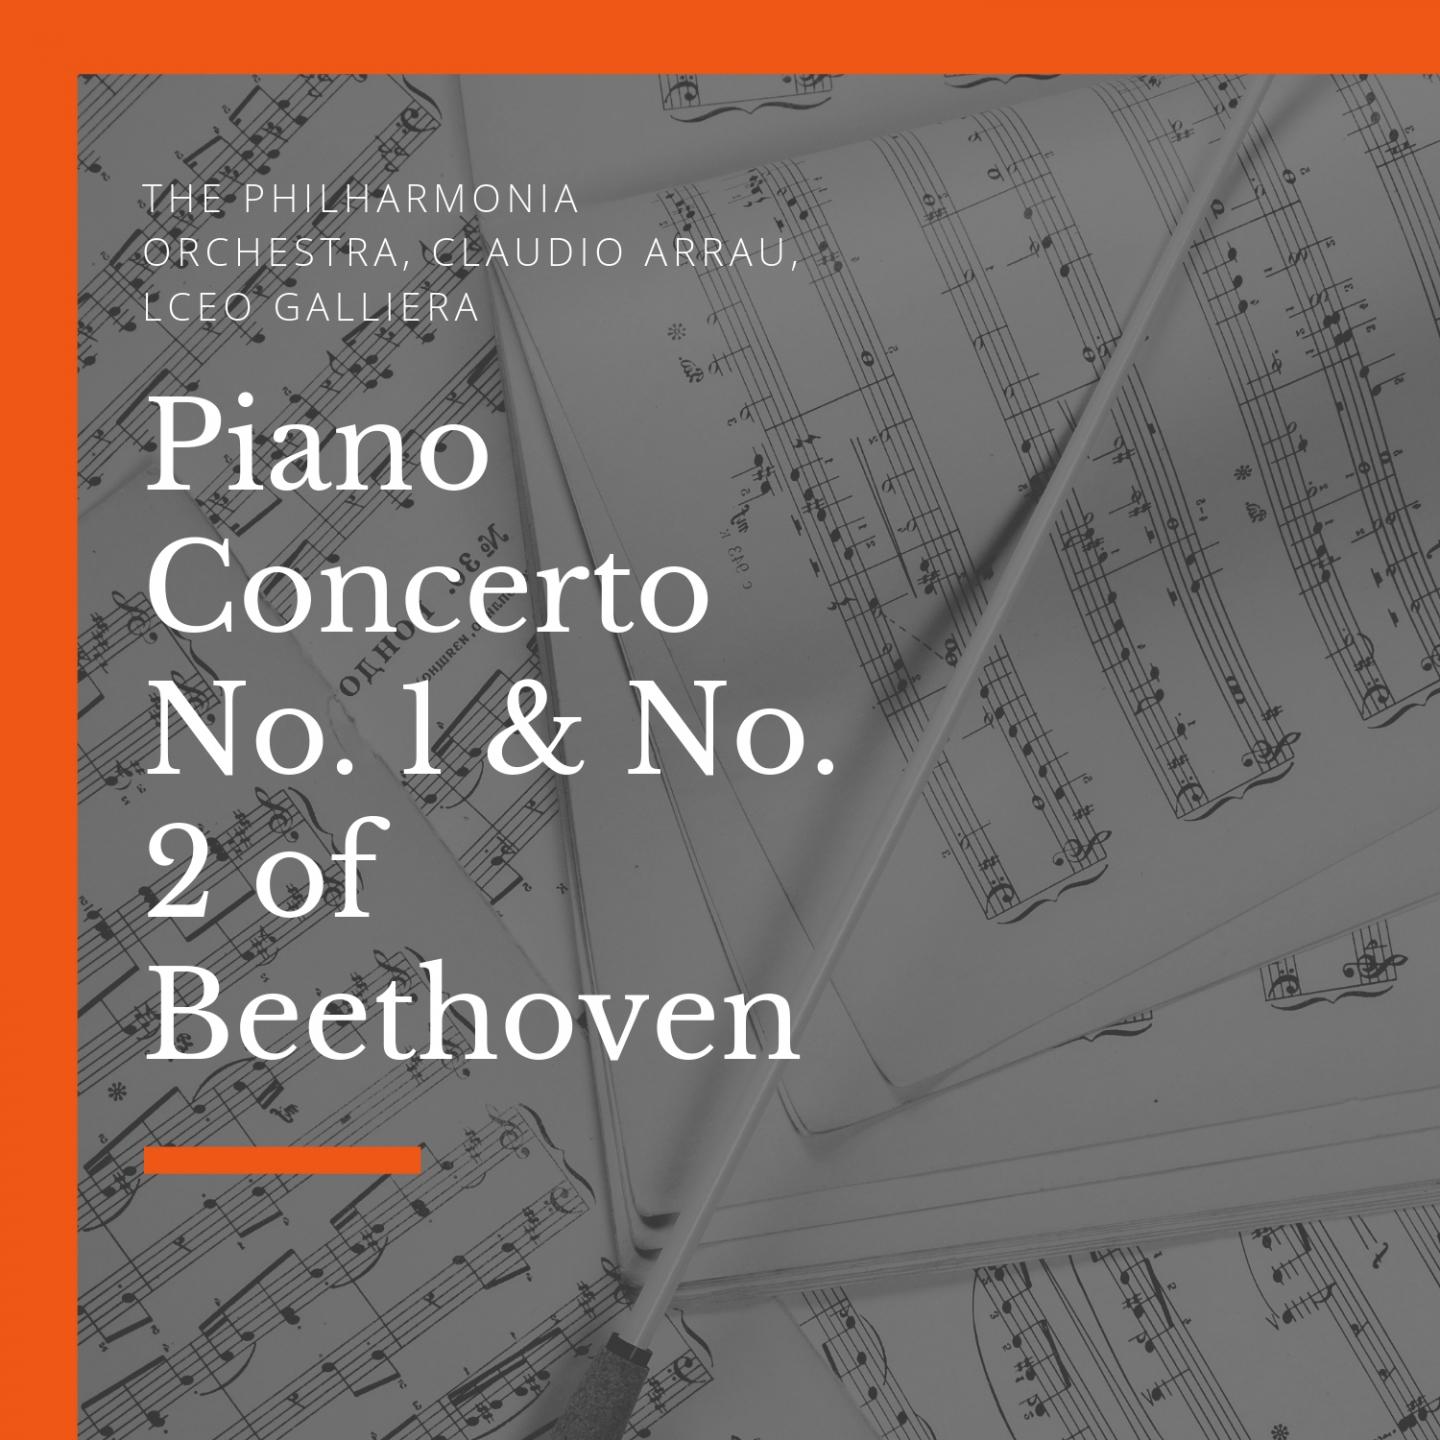 Piano Concerto No. 1, in C Major, Op. 15: III. Rondo Allegro scherzando